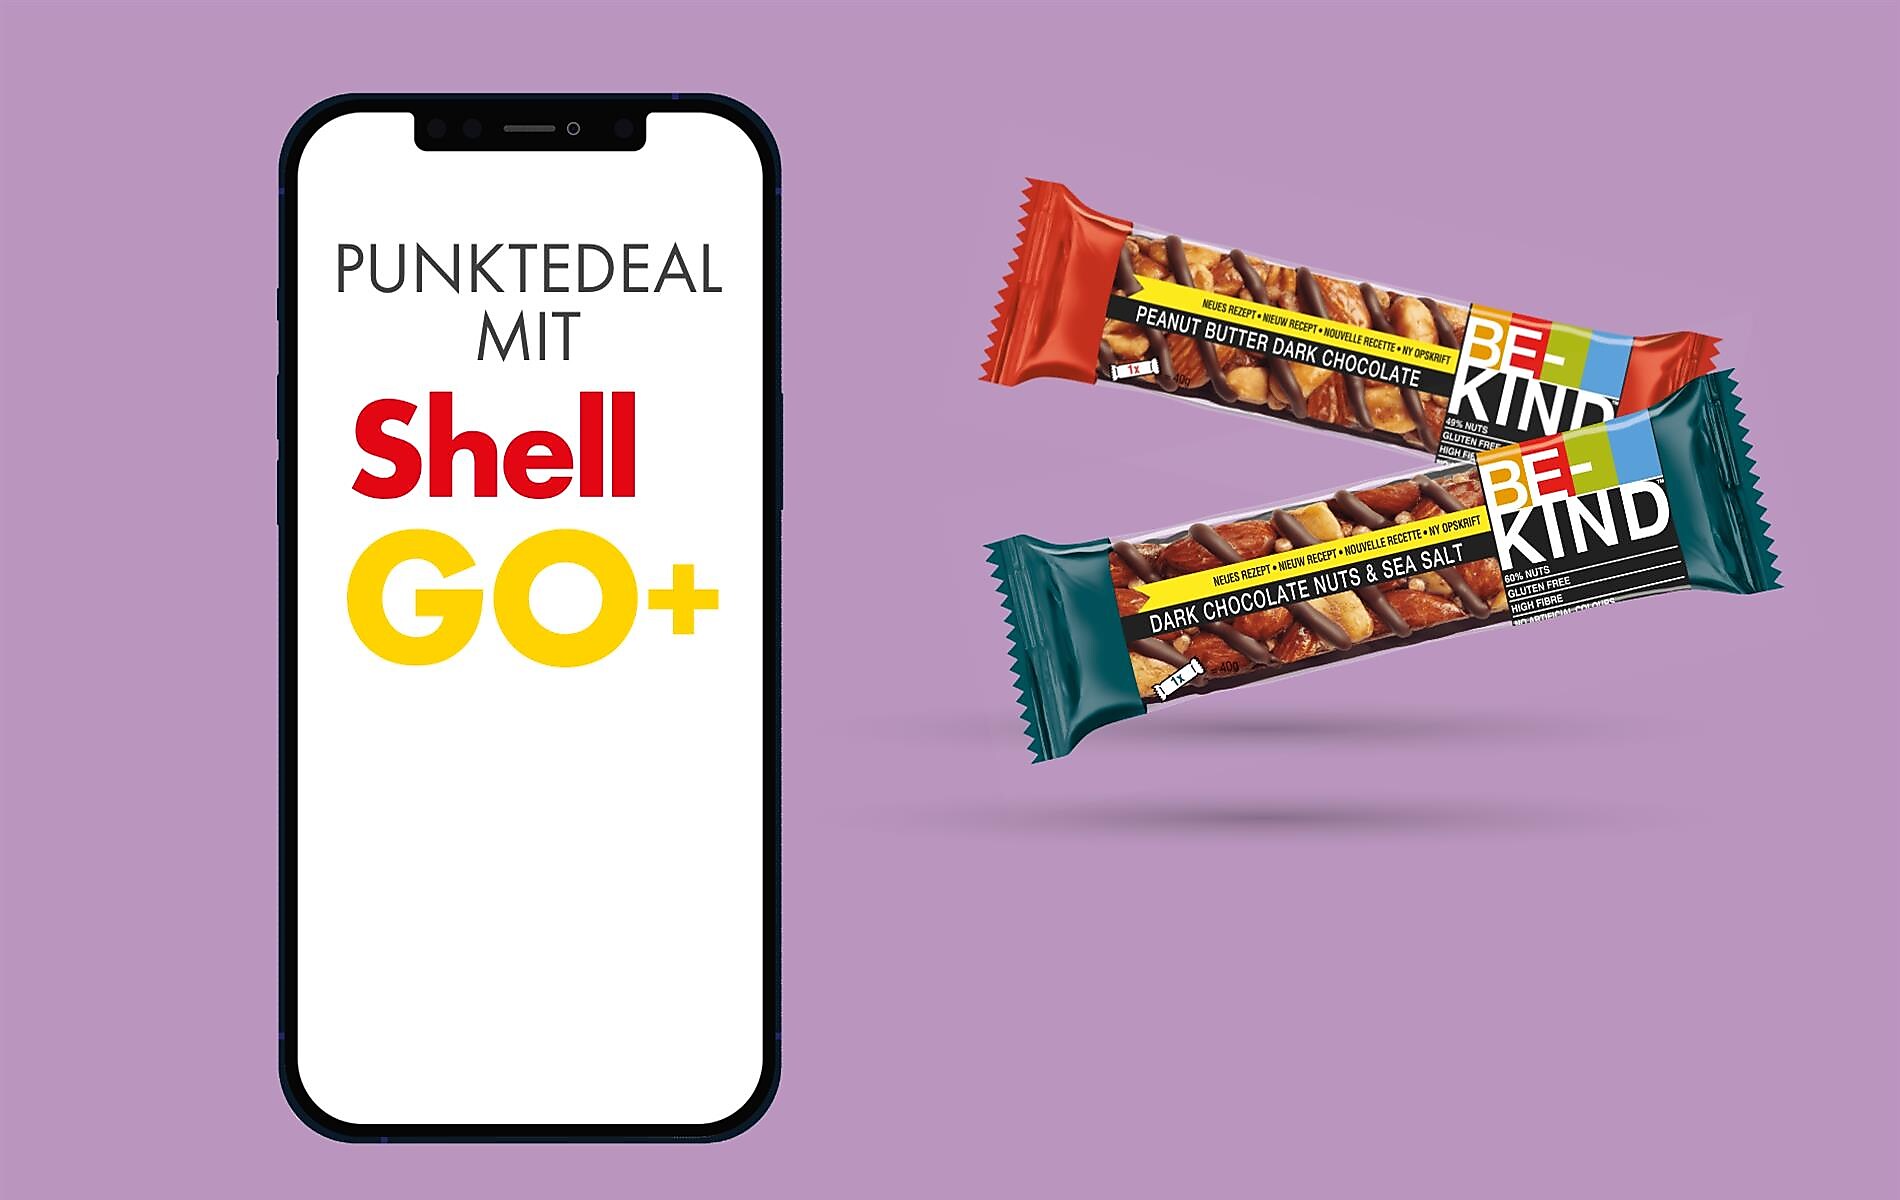 Shell Go+ Punktedeal: Be Kind Riegel um 250 Punkte